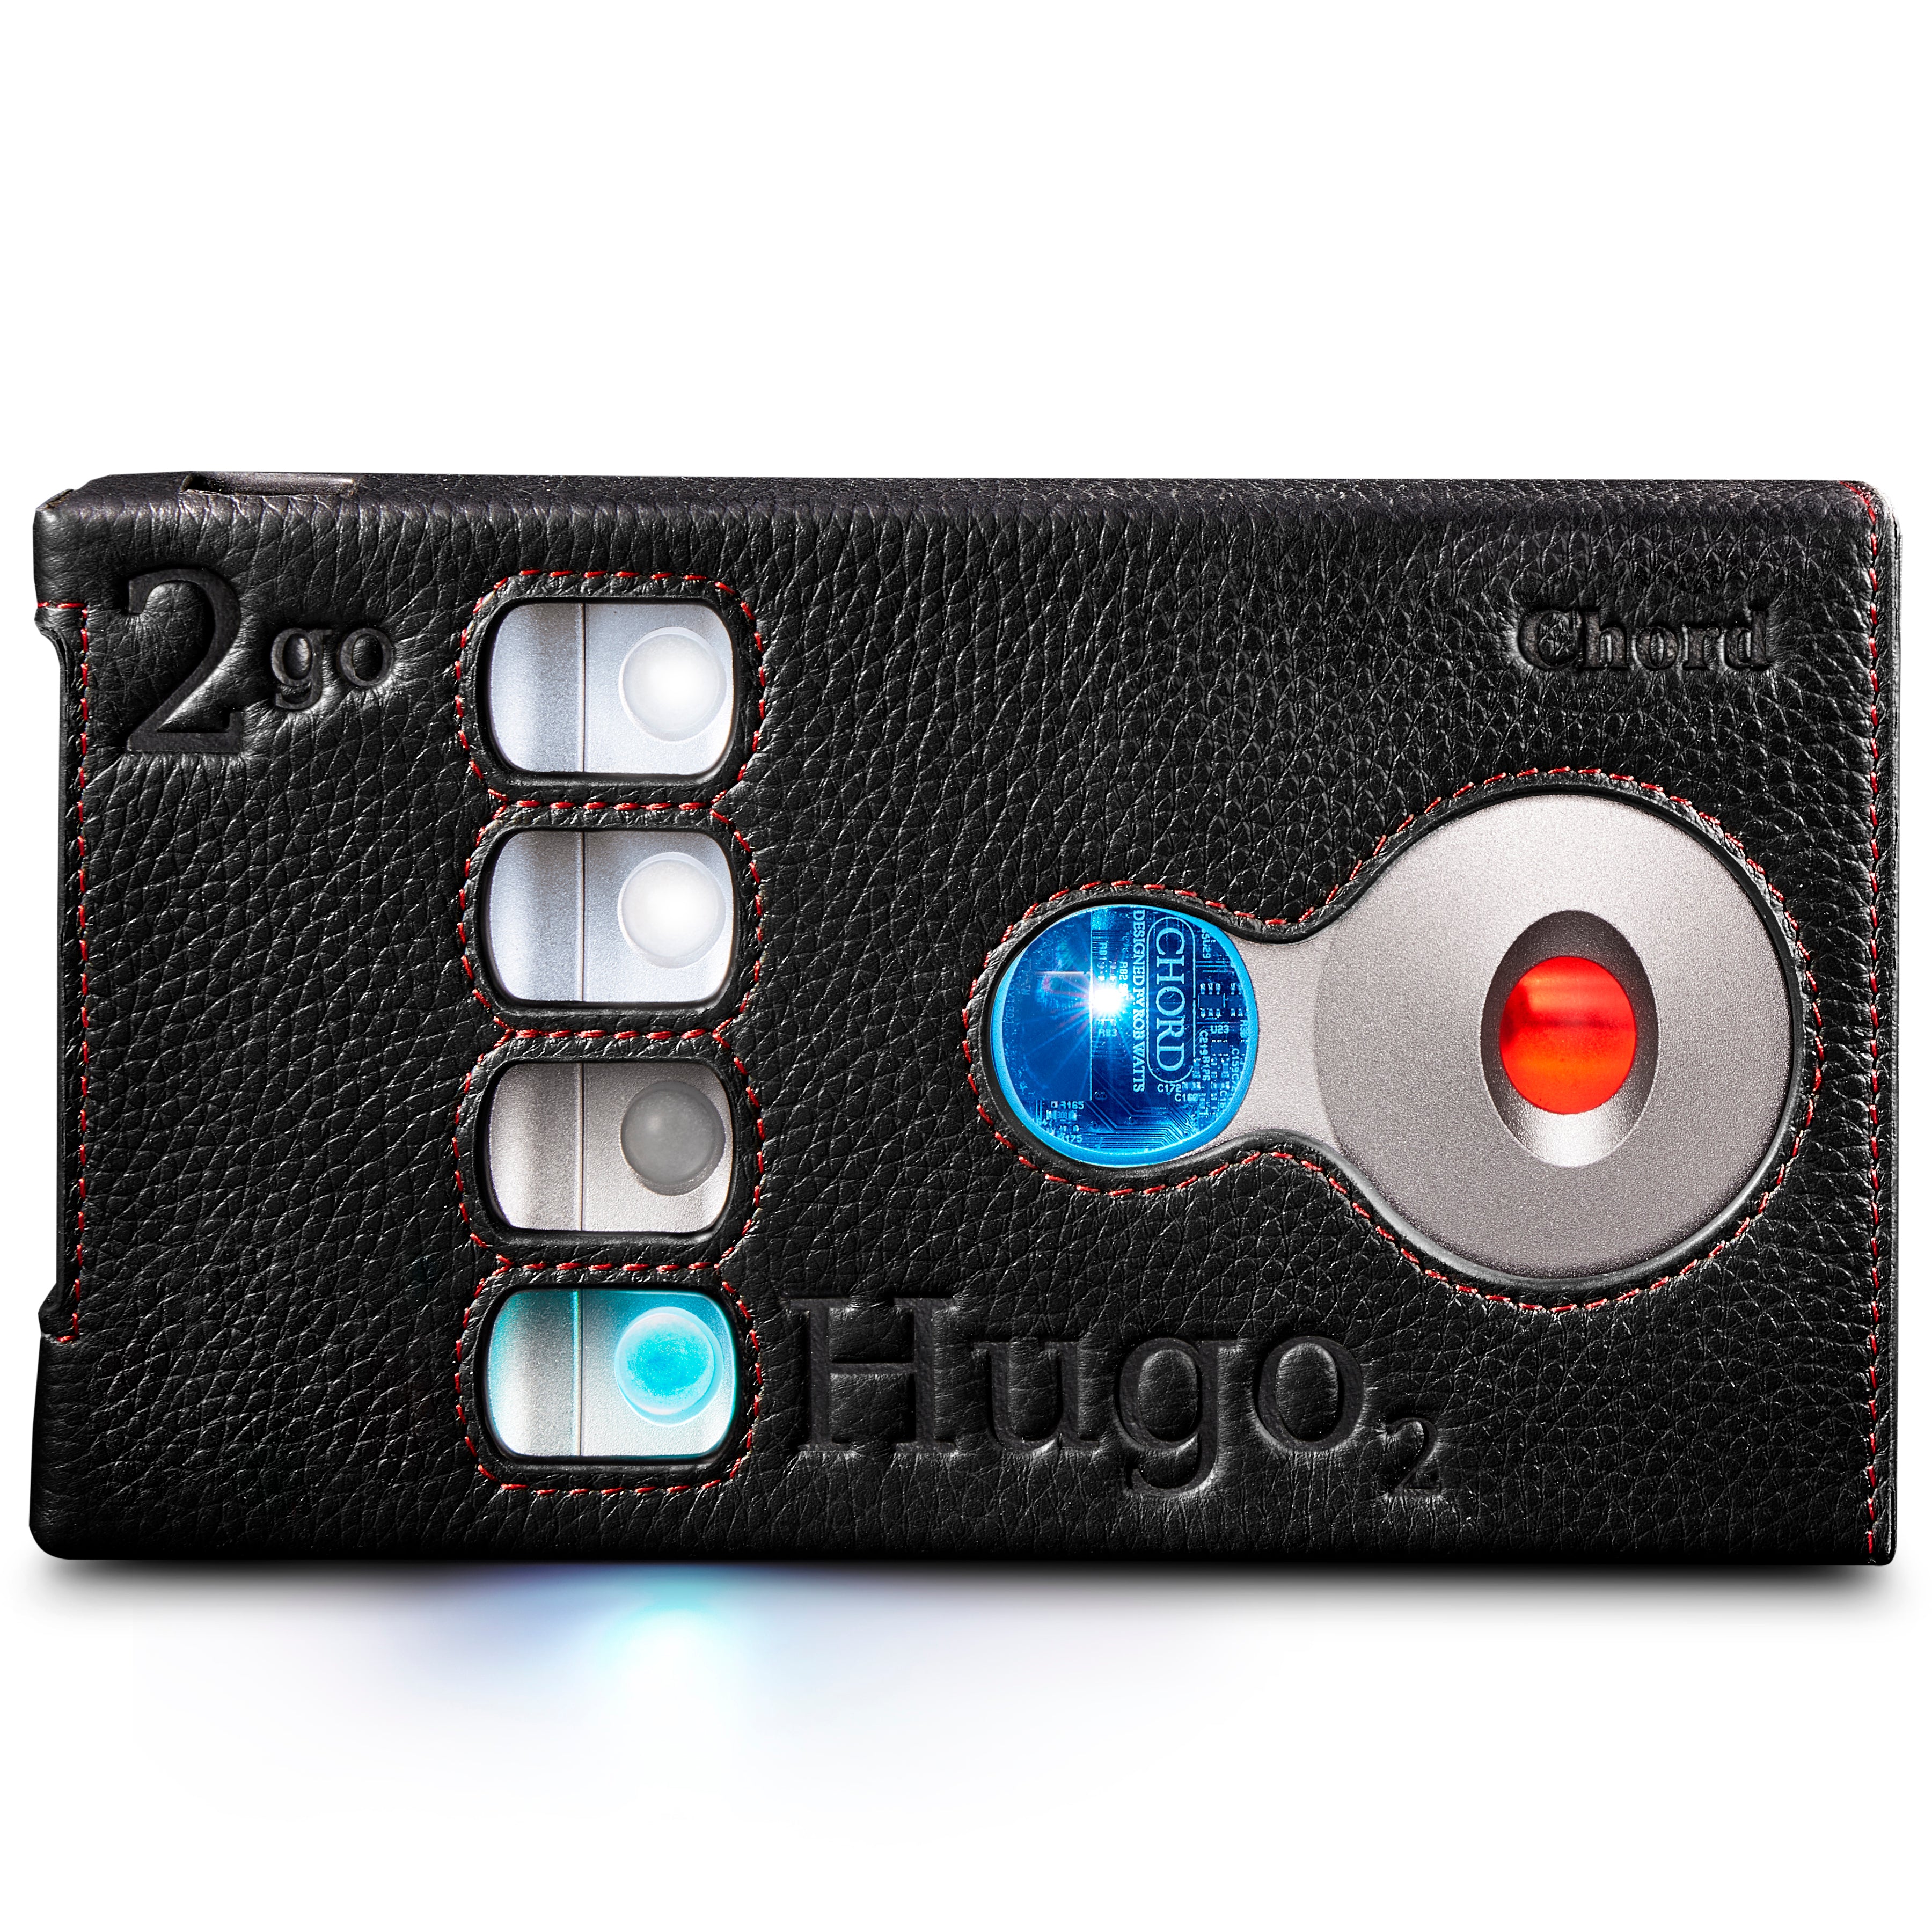 Chord Hugo 2 2go Premium Leather Case